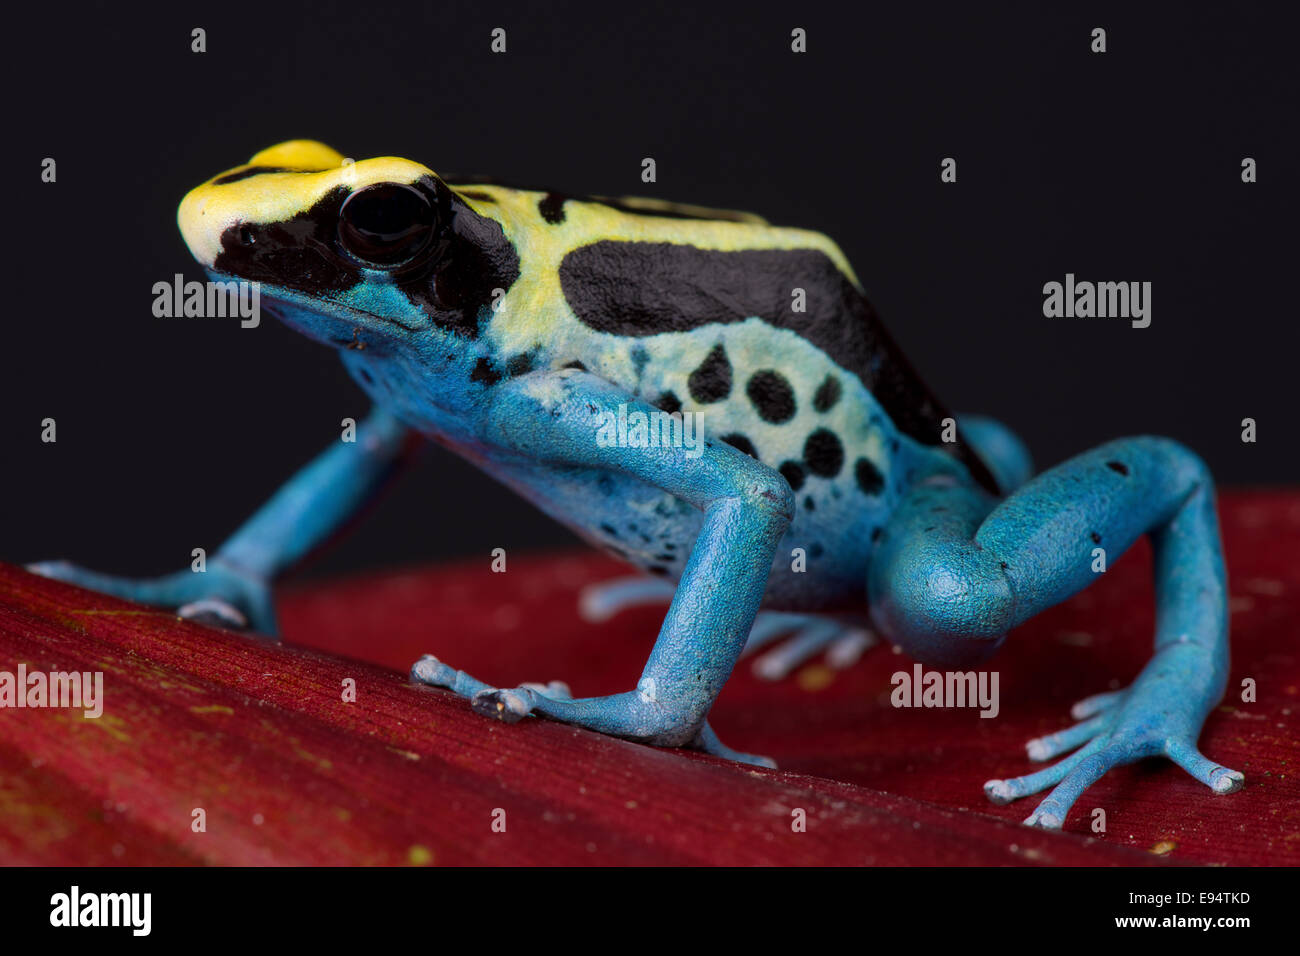 Poison dart frog / Dendrobates tinctorius Stock Photo